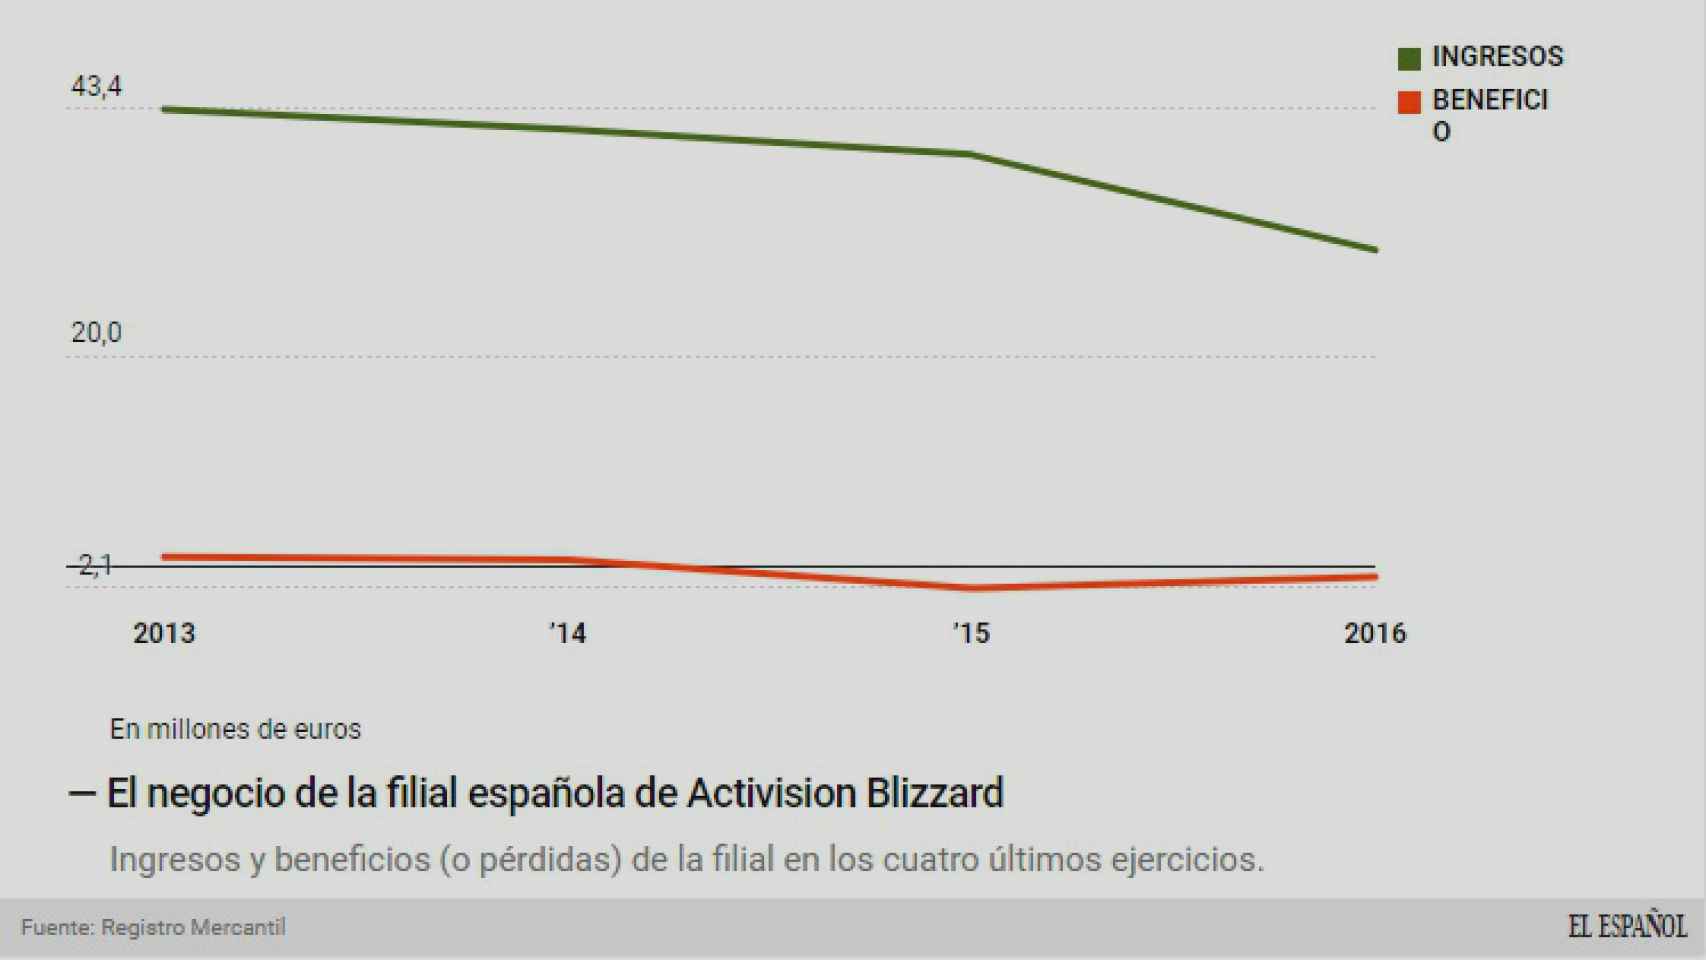 El negocio de Activision Blizzard.